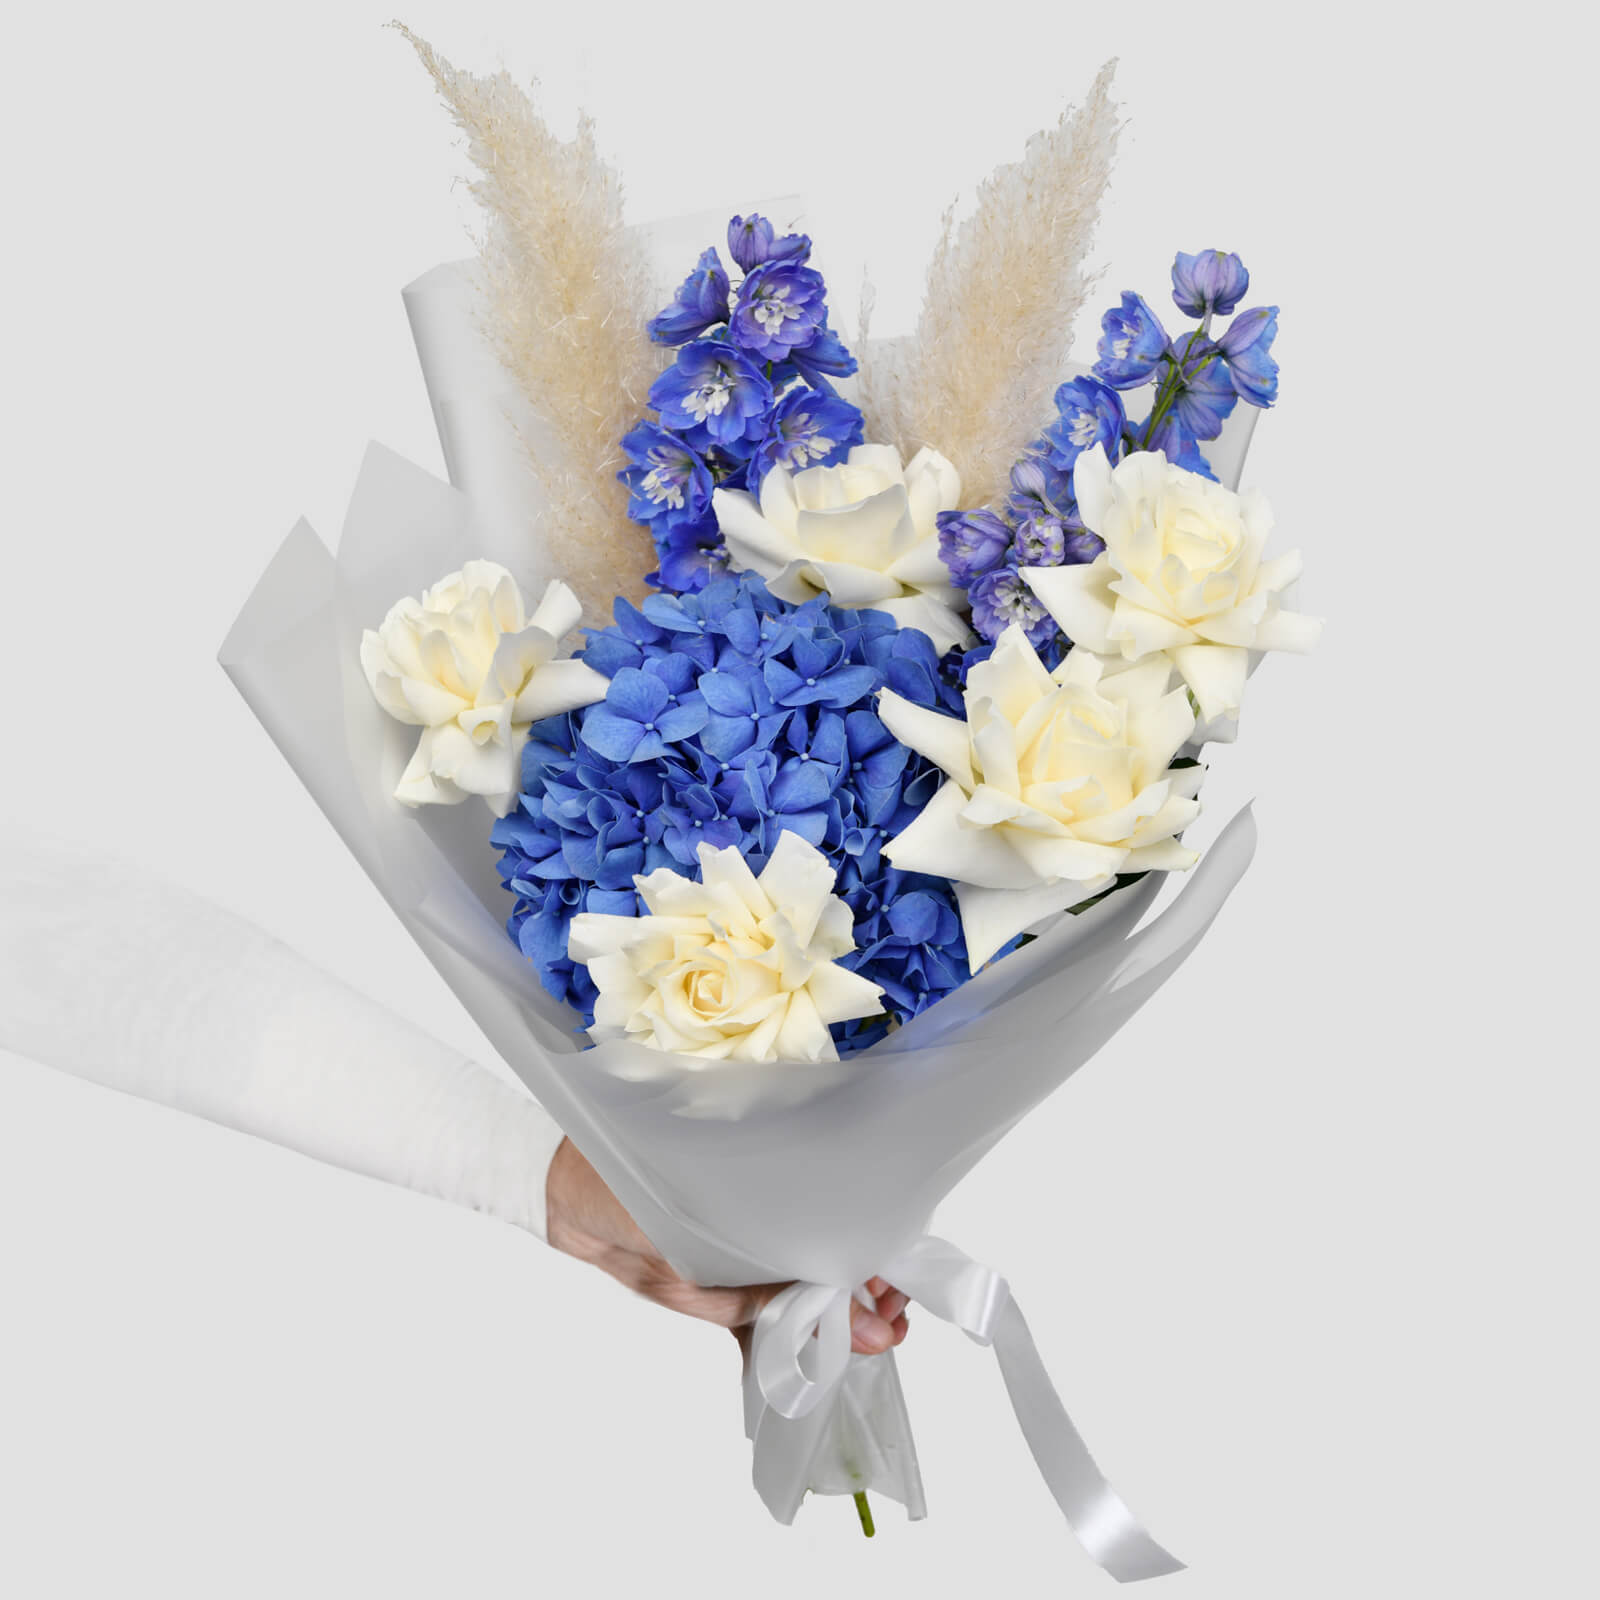 Buchet cu hortensie albastra si delphinium, 1